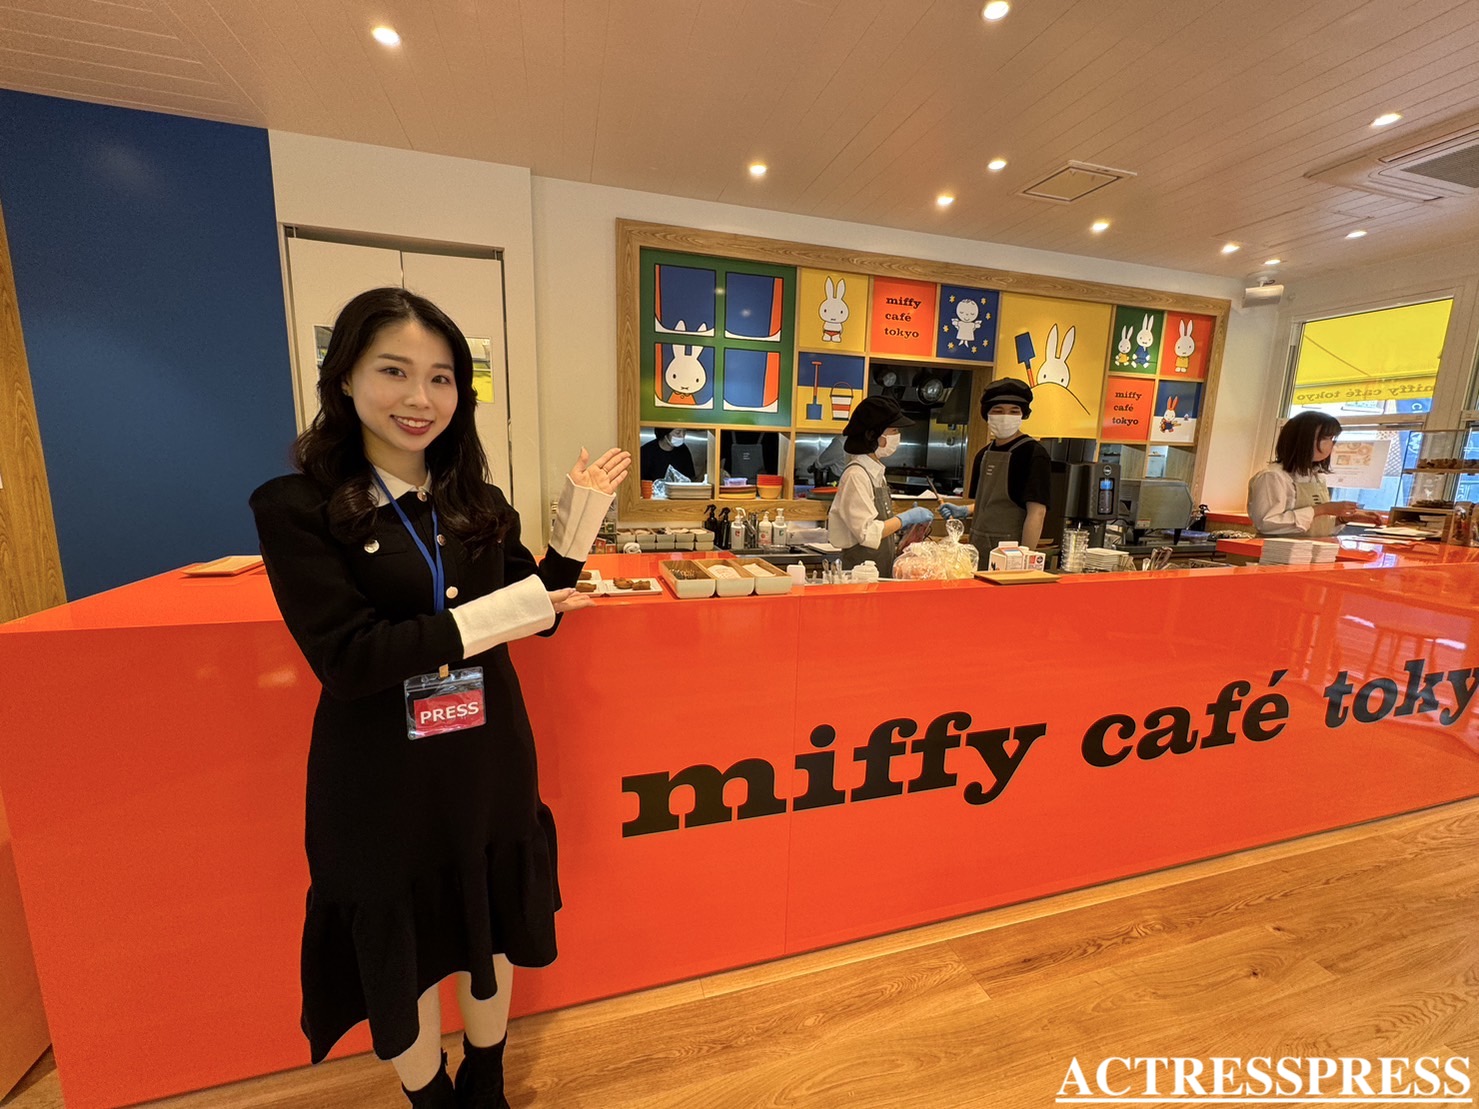 國近奈旺（ACTRESS PRESS REPORTER（アクトレスプレス リポーター）in miffy café tokyo（ミッフィーカフェ トーキョー）​​代官山駅 